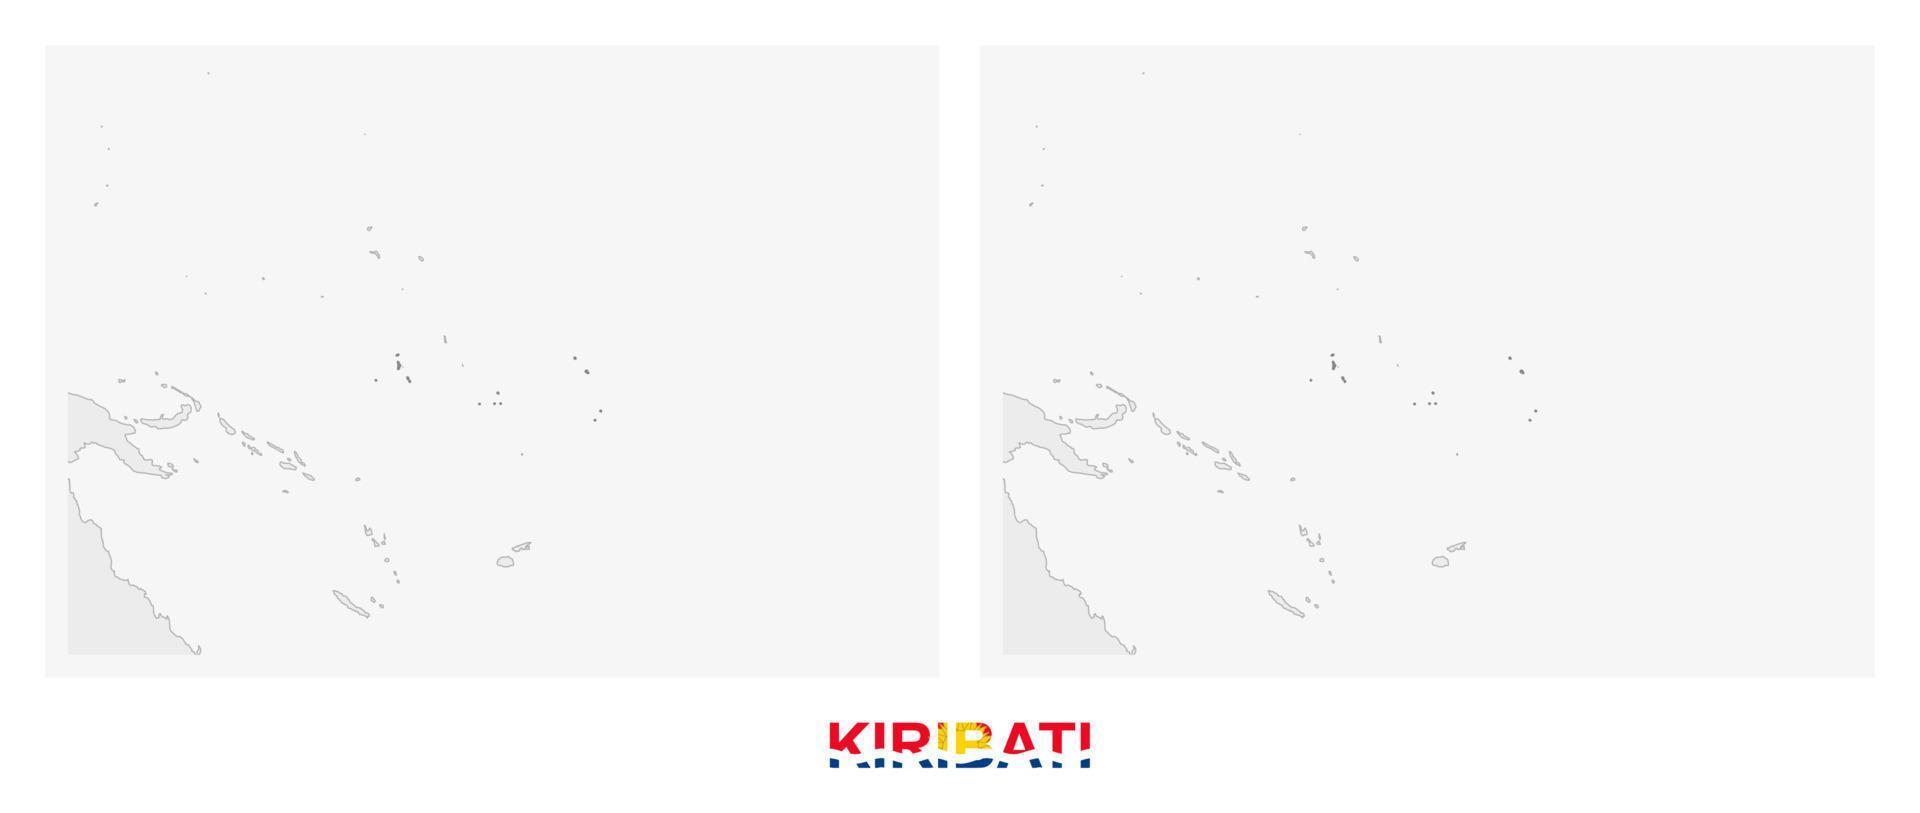 dos versiones del mapa de kiribati, con la bandera de kiribati y resaltada en gris oscuro. vector